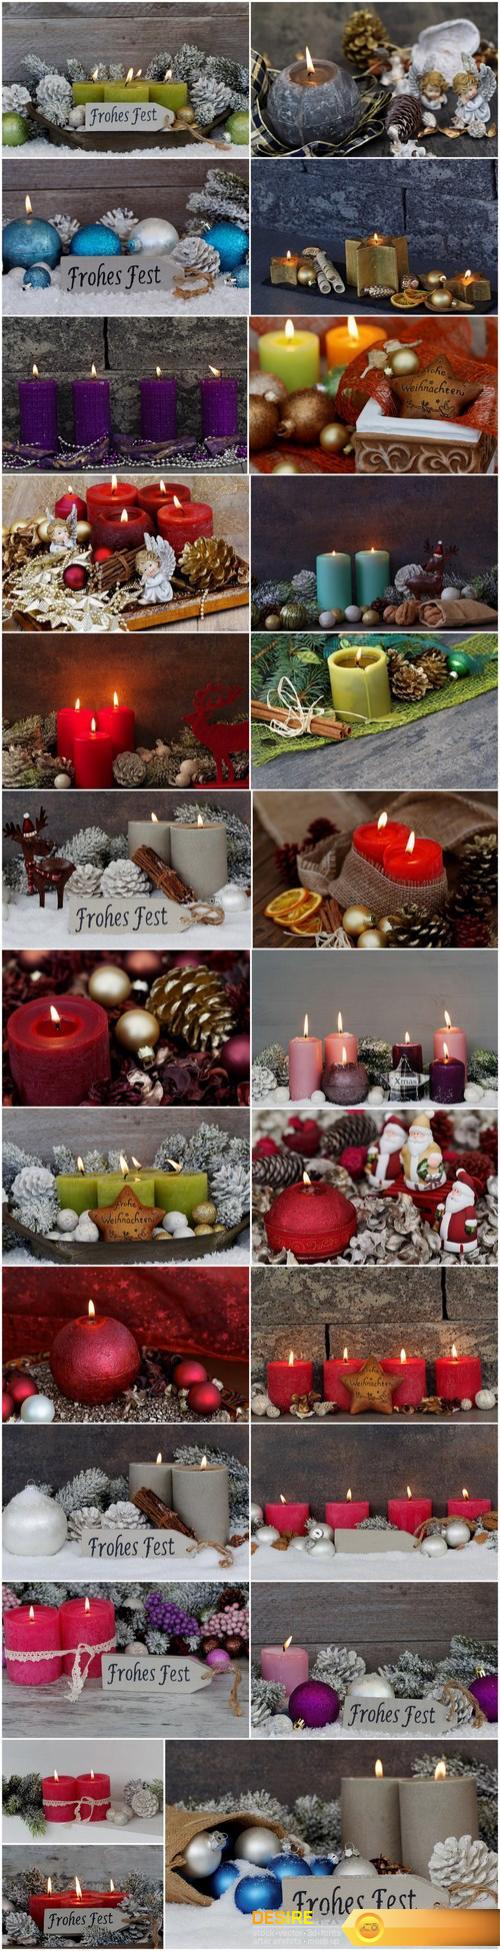 Beautiful Christmas Decorations 4 - 25xUHQ JPEG Photo Stock